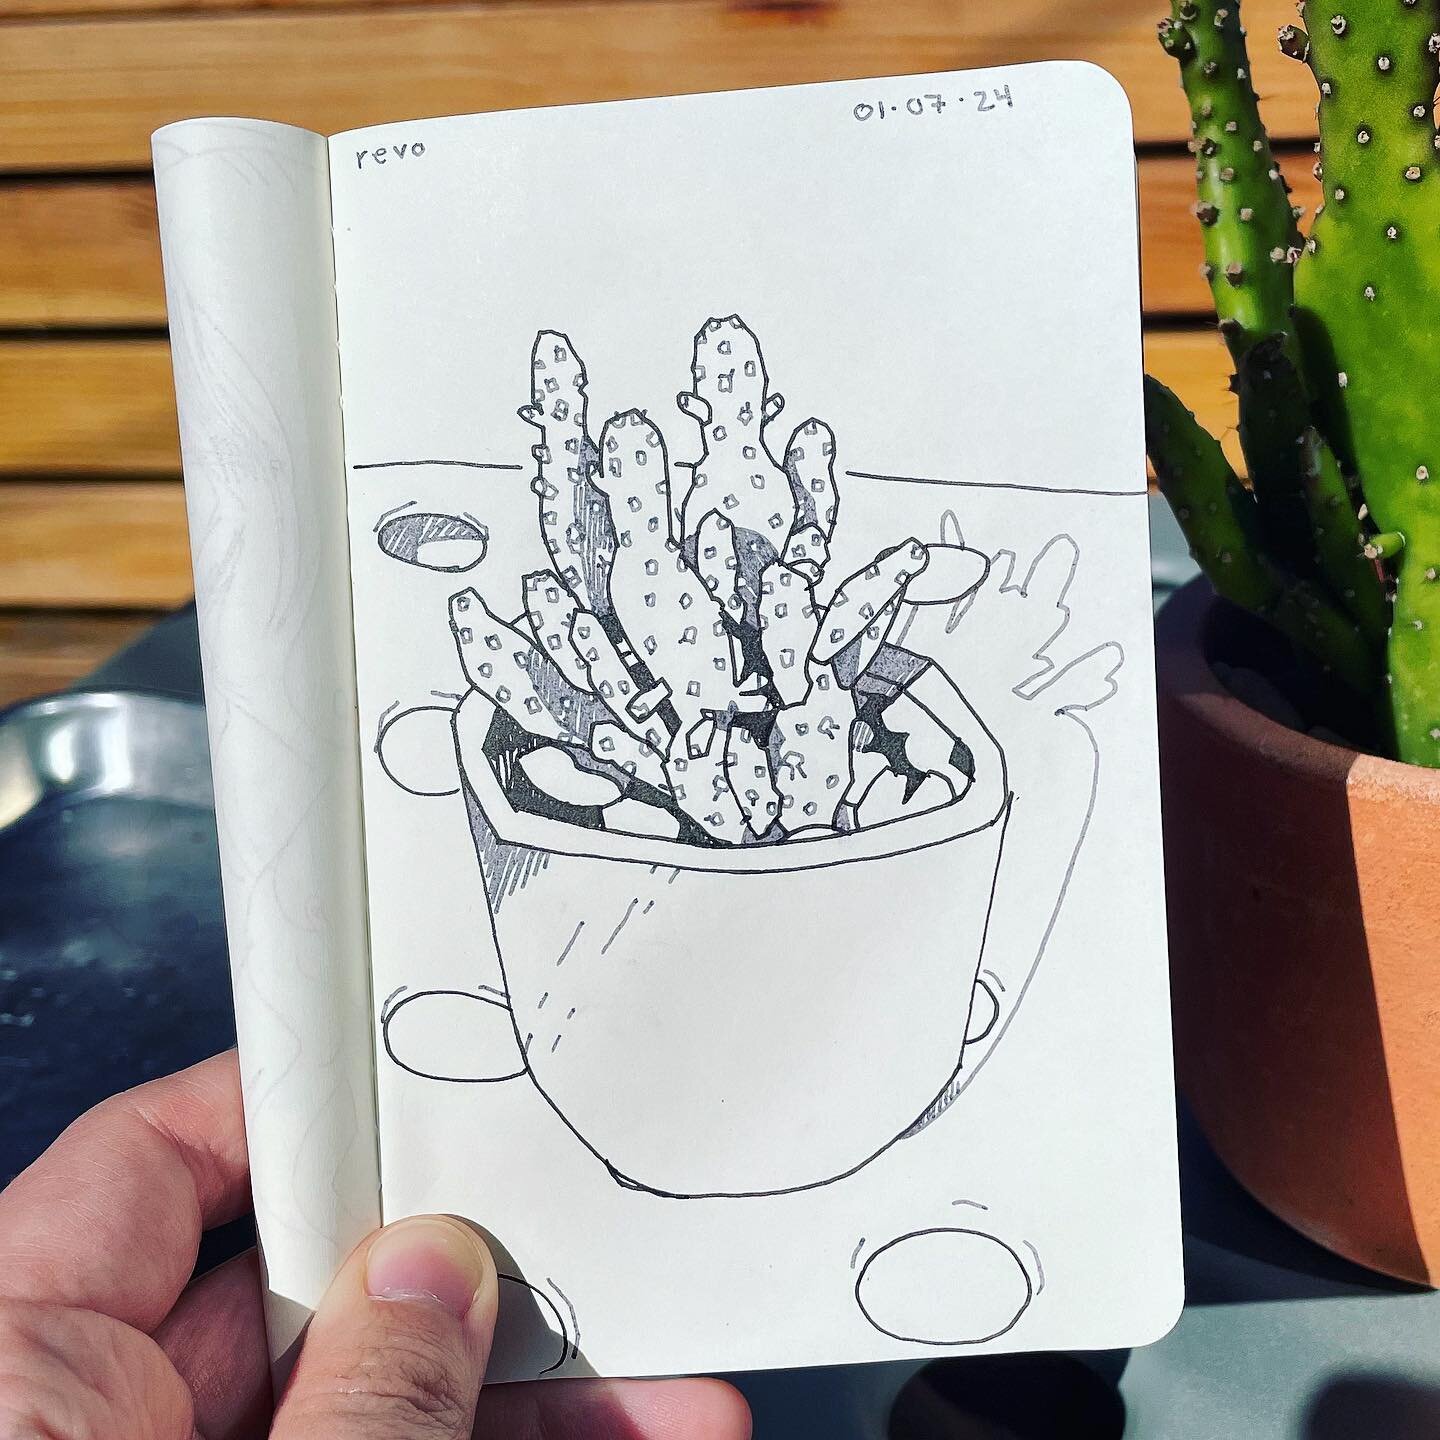 just a cactus

#sketchbook #ink #moleskine #inkdrawing #pendrawing #cactus #cactusart #winsorandnewton #carlsbad